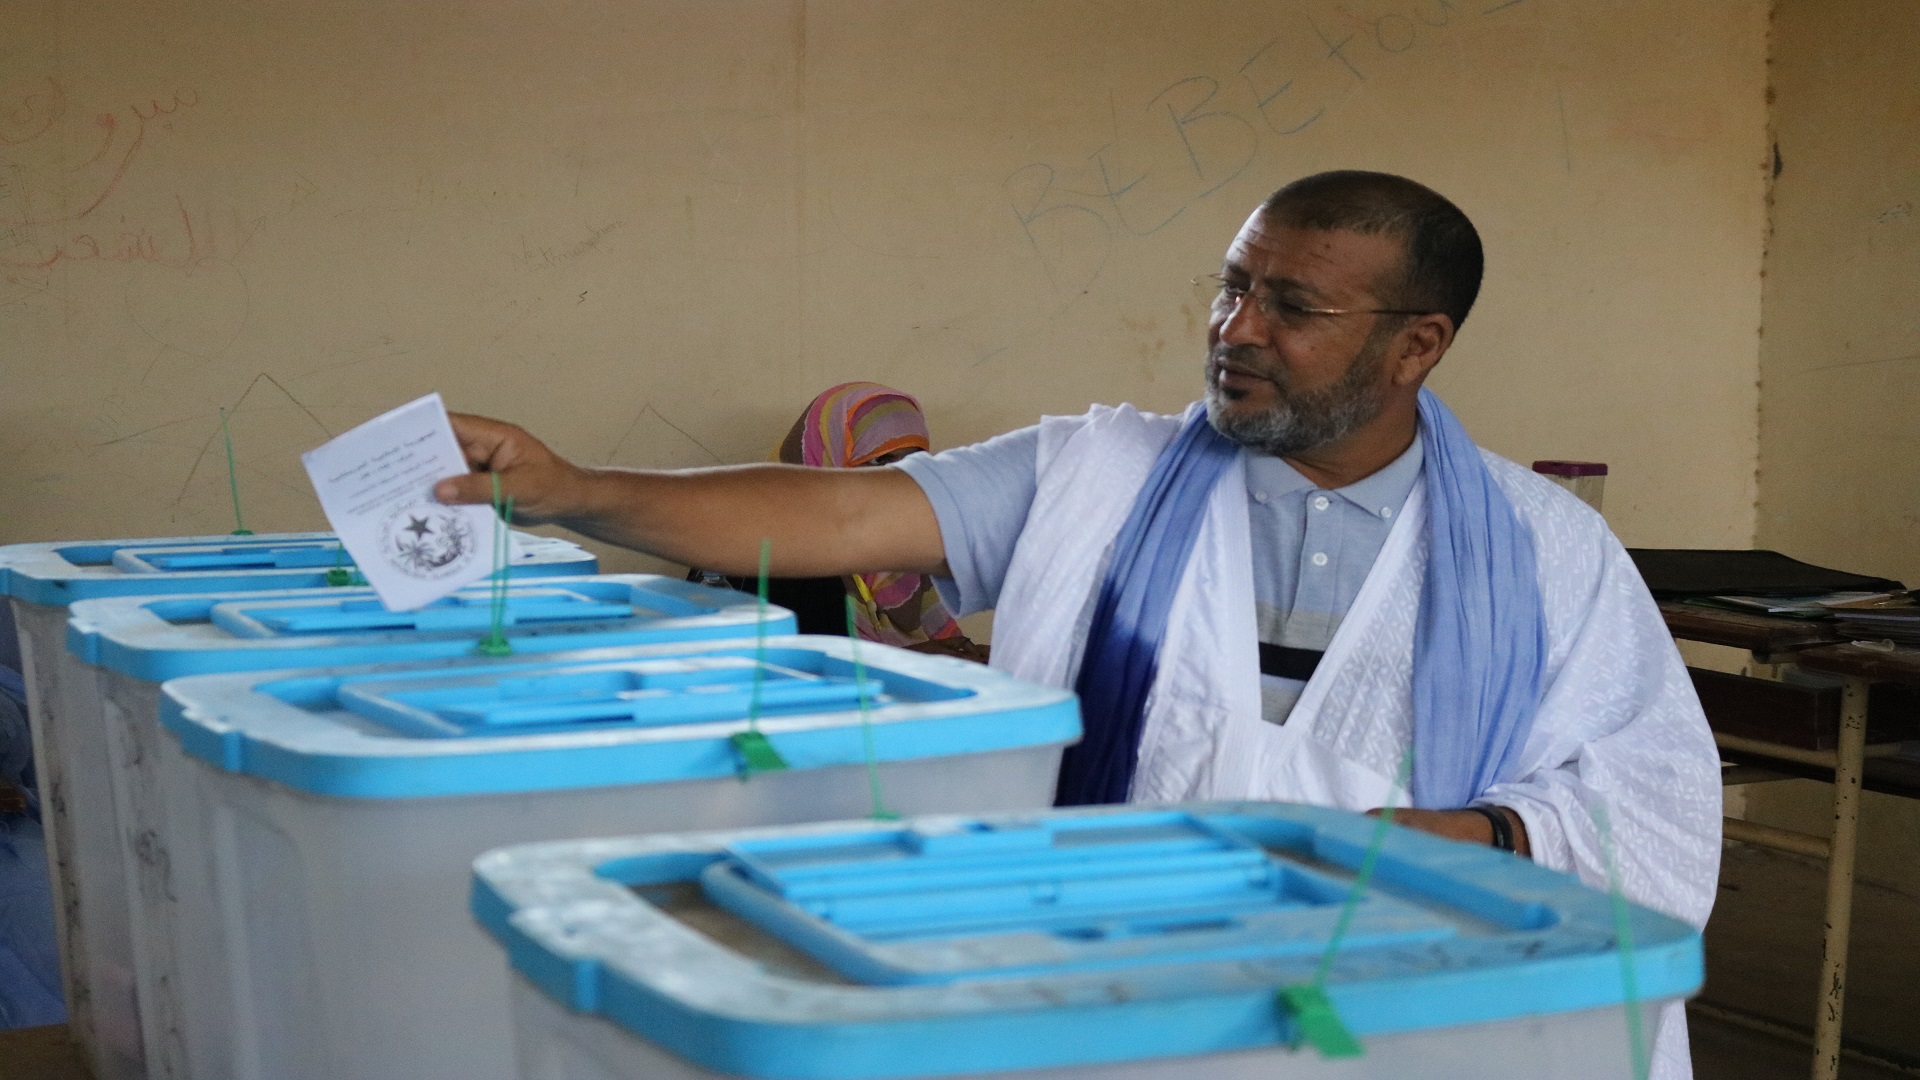 فوز الإسلاميين بأبرز الدوائر الانتخابية في موريتانيا